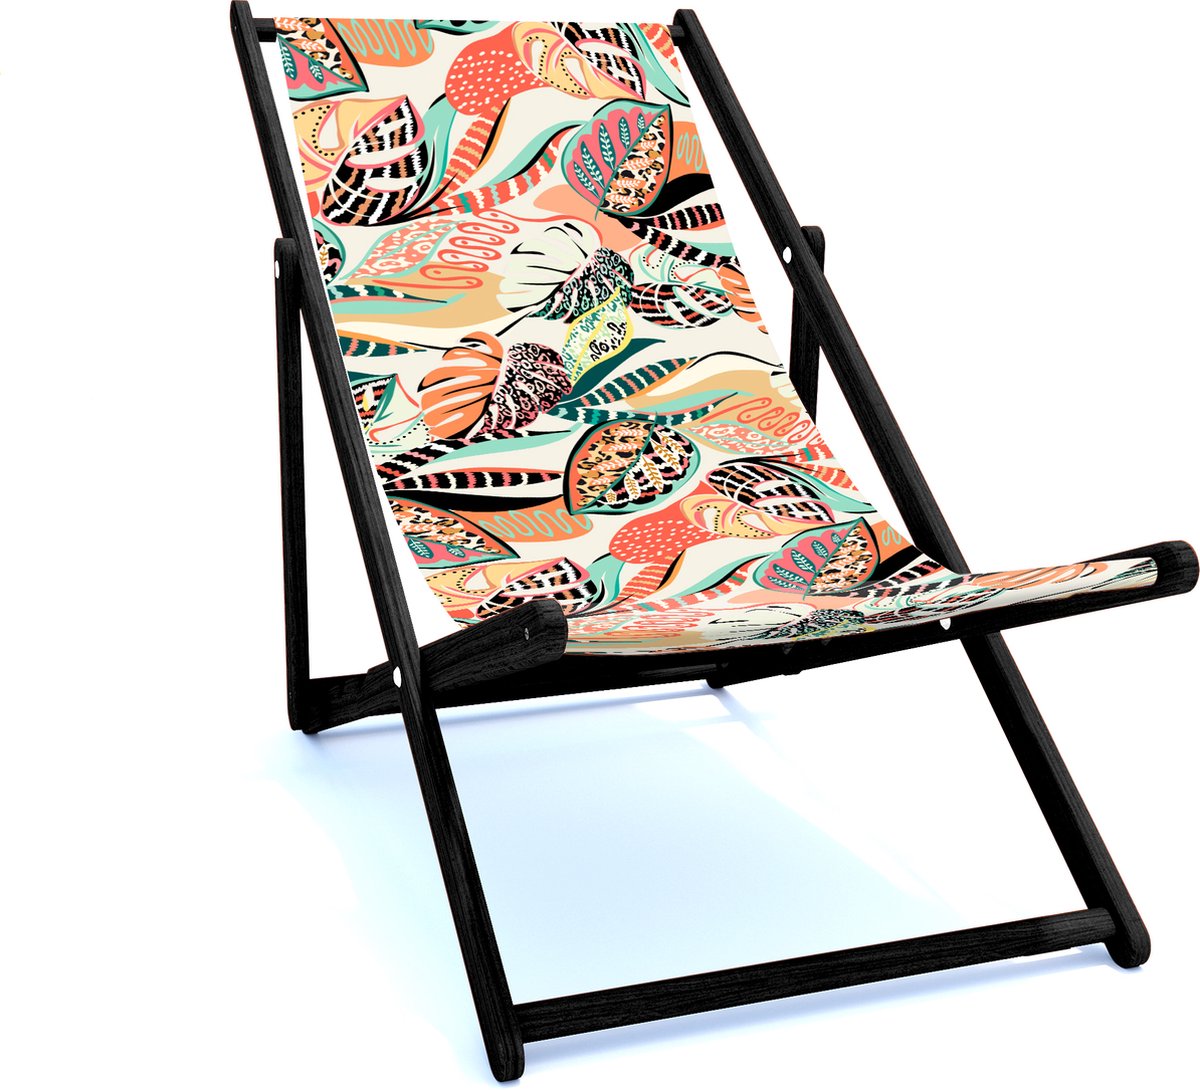 Holtaz Strandstoel Hout Inklapbaar Comfortabele Zonnebed Ligbed met verstelbare Lighoogte met stoffen Patterns zwart houten frame